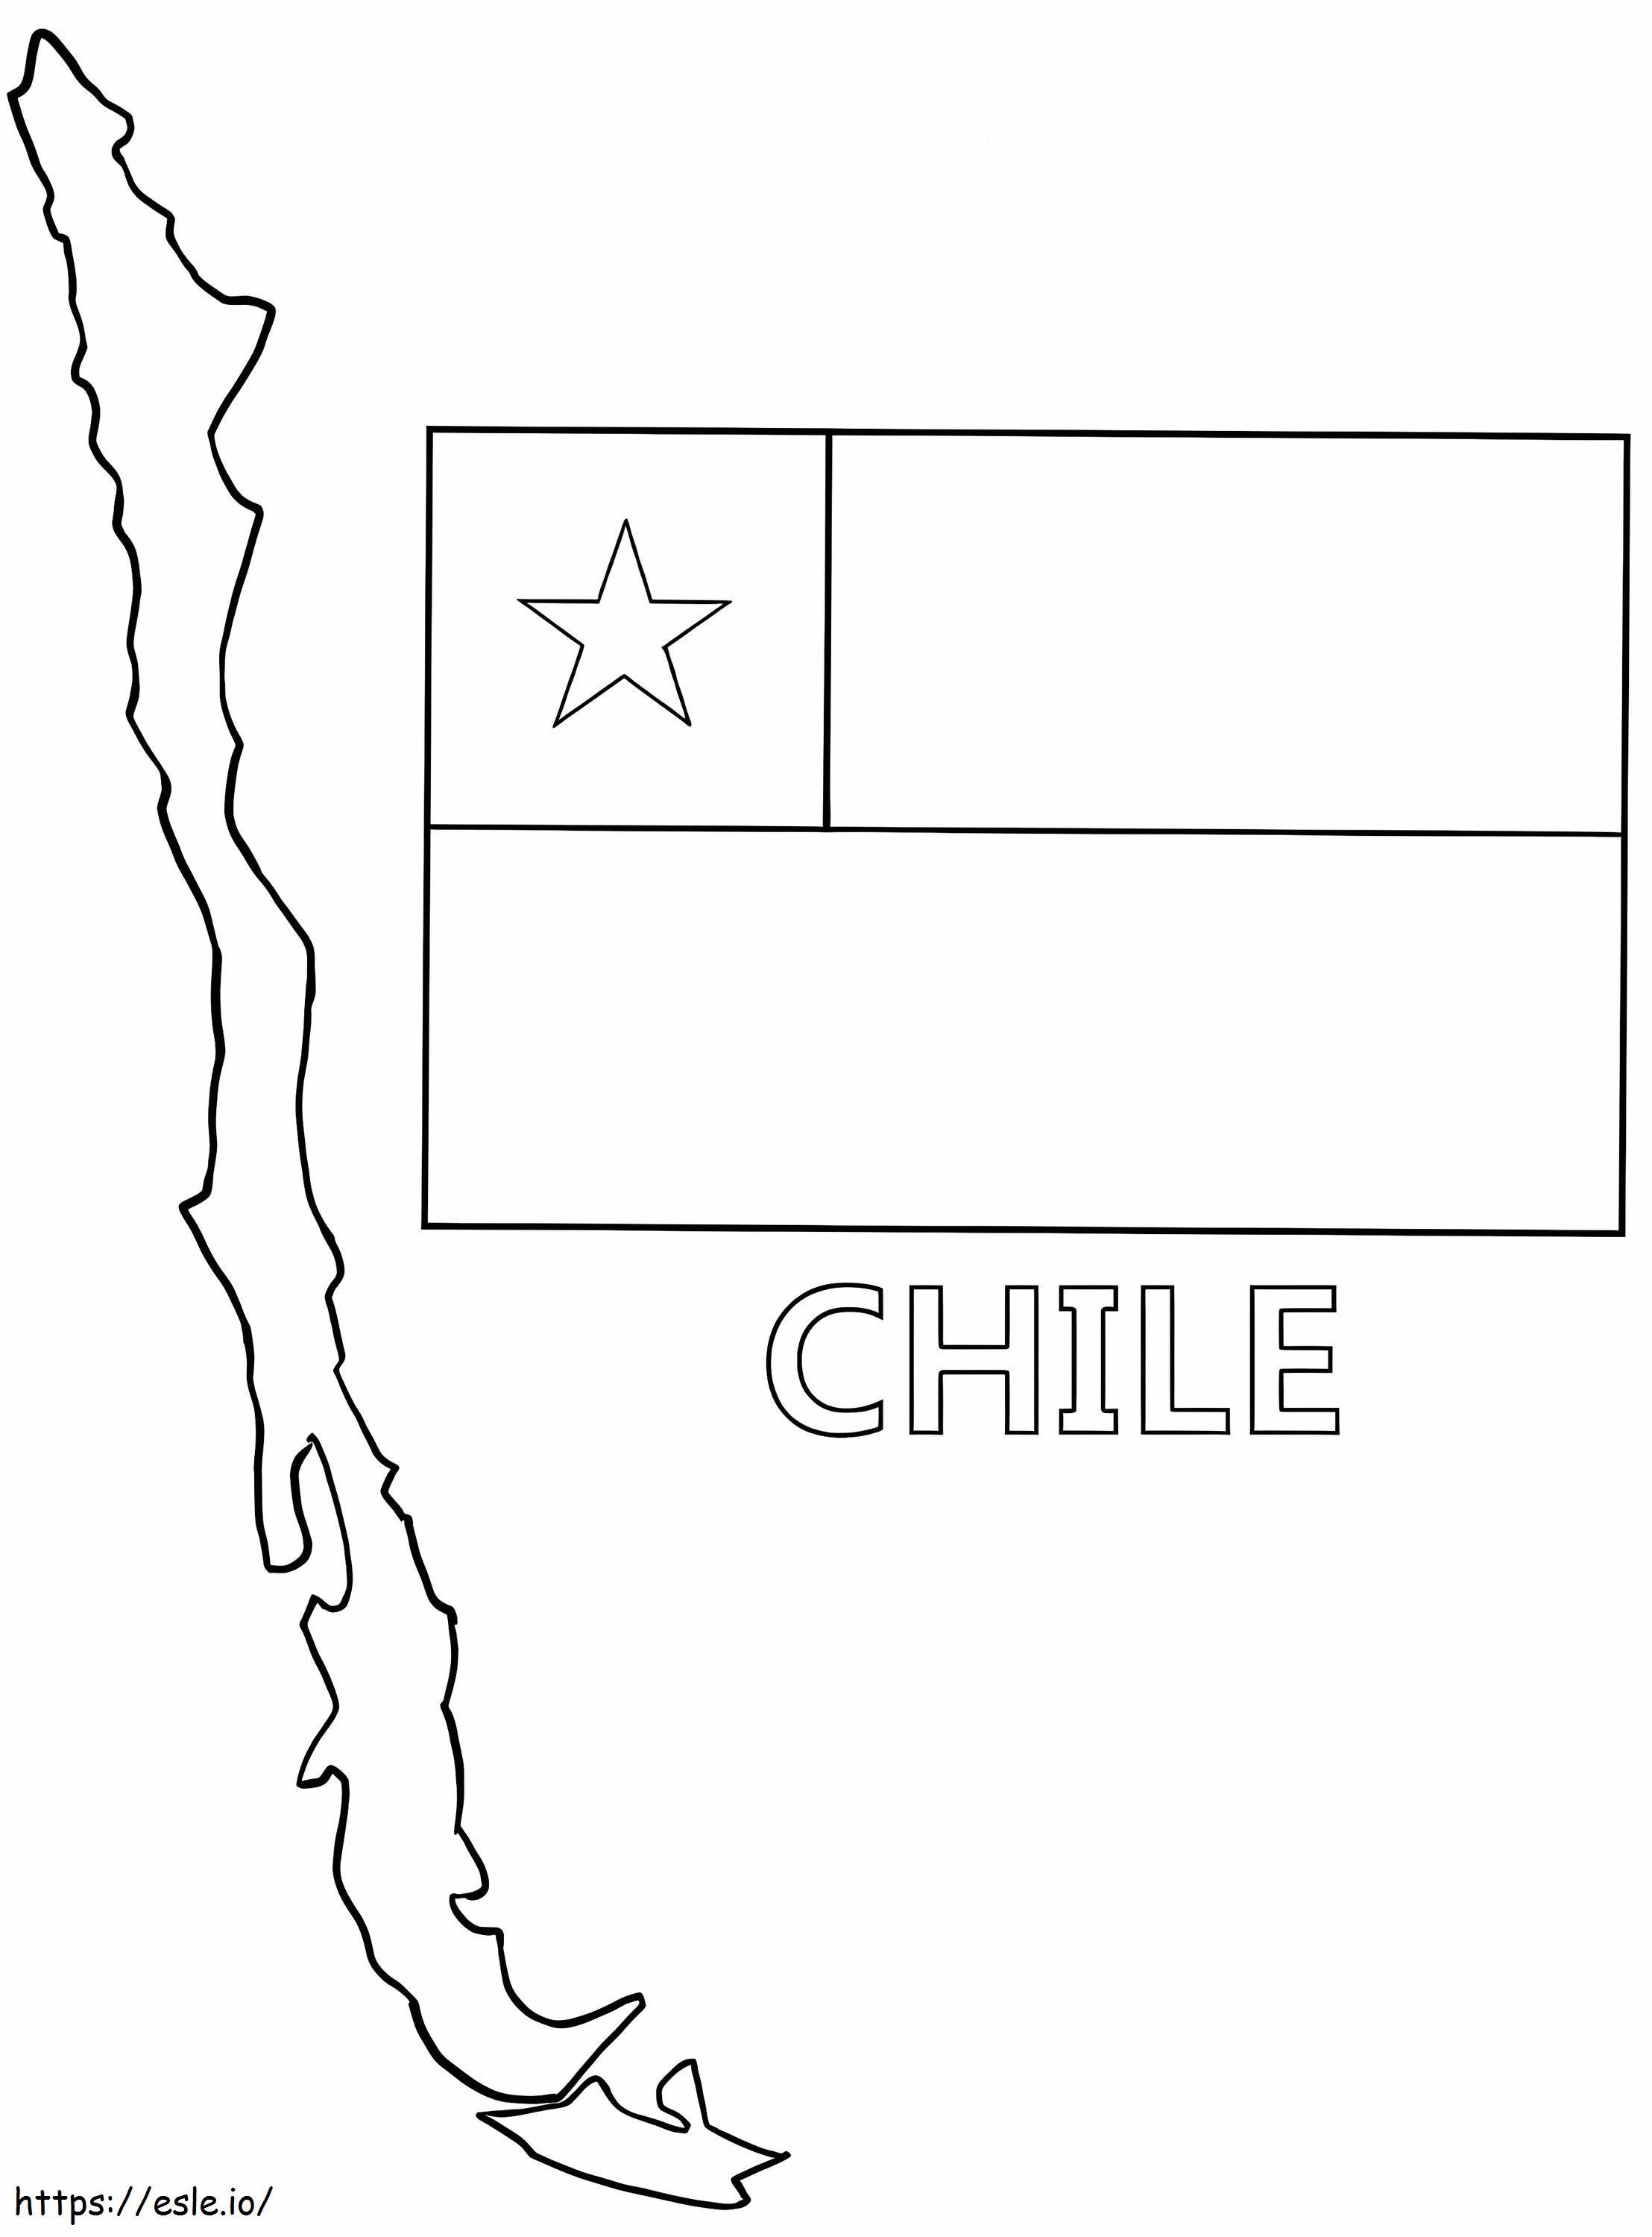 Chili Kaart En Vlag kleurplaat kleurplaat